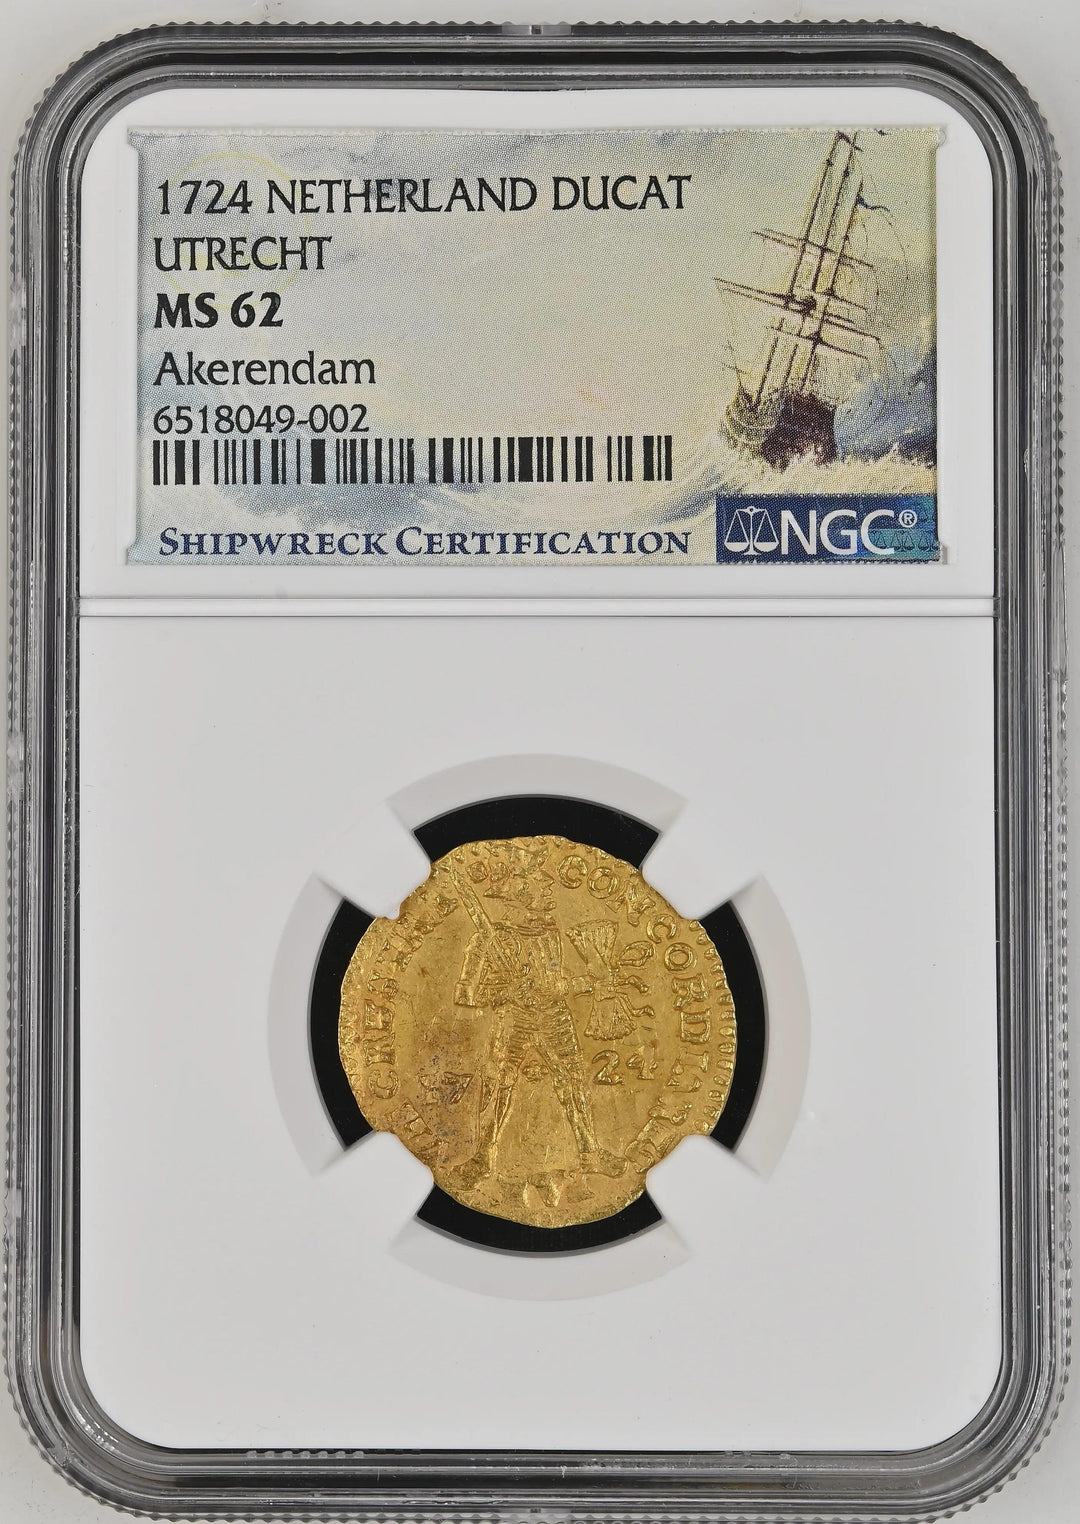 Netherlands Utrecht Gold Ducat - 1724 | Akerendam Shipwreck Maritime Treasure